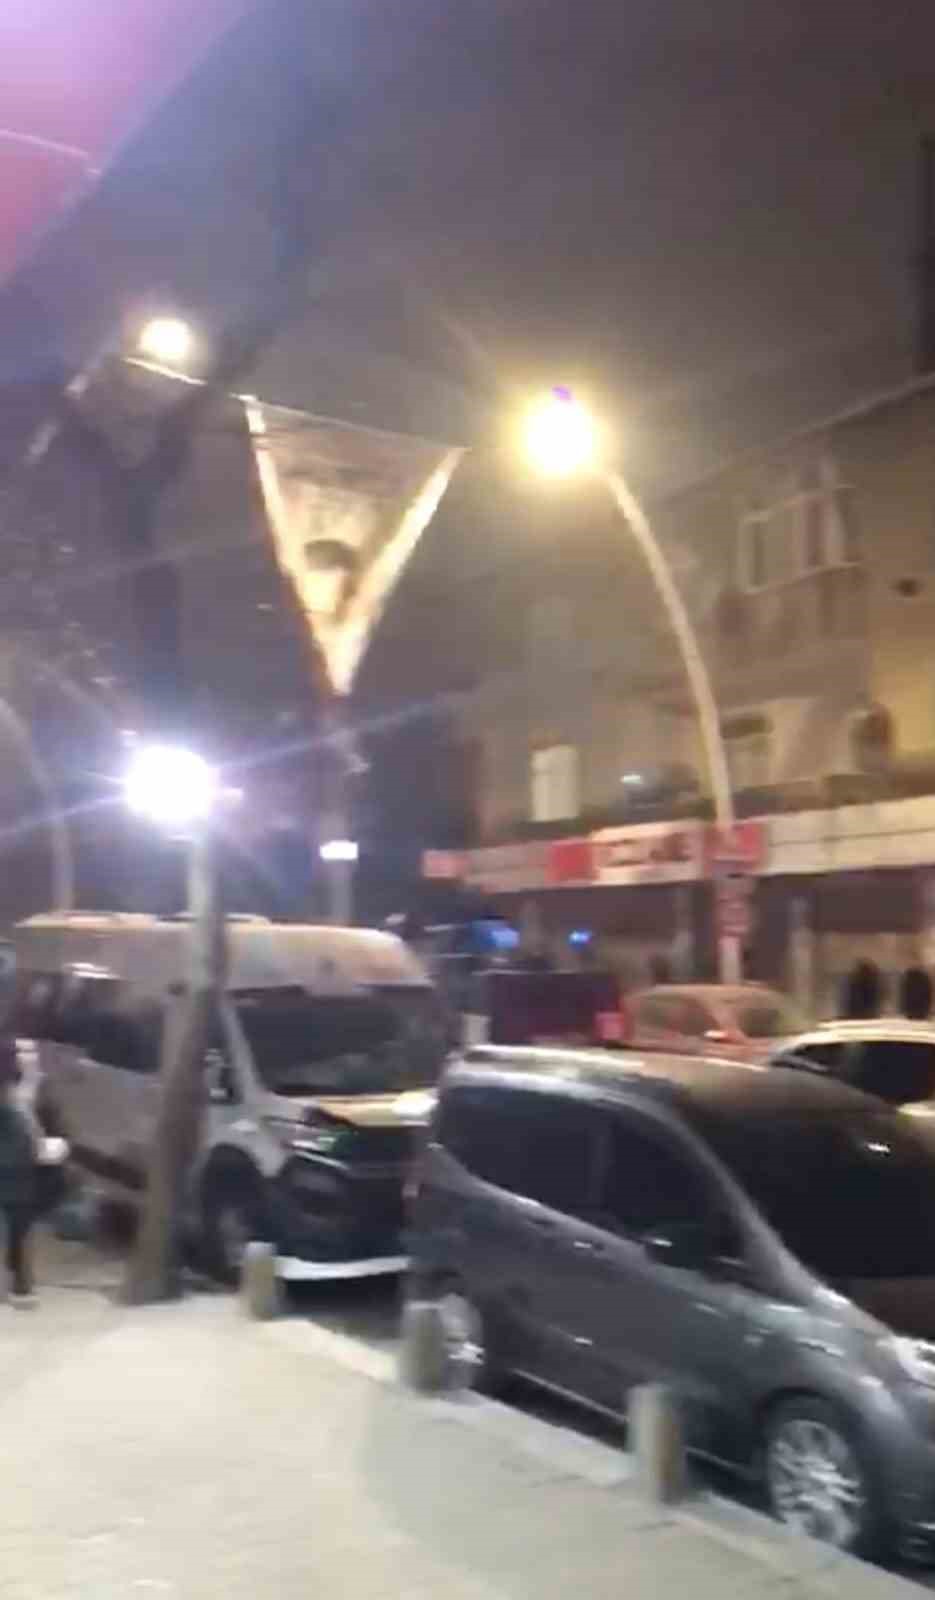 sultangazide havaya ates acan supheliler polisten kacarken kaza yapip kayiplara karisti 1 bkmh3ibD